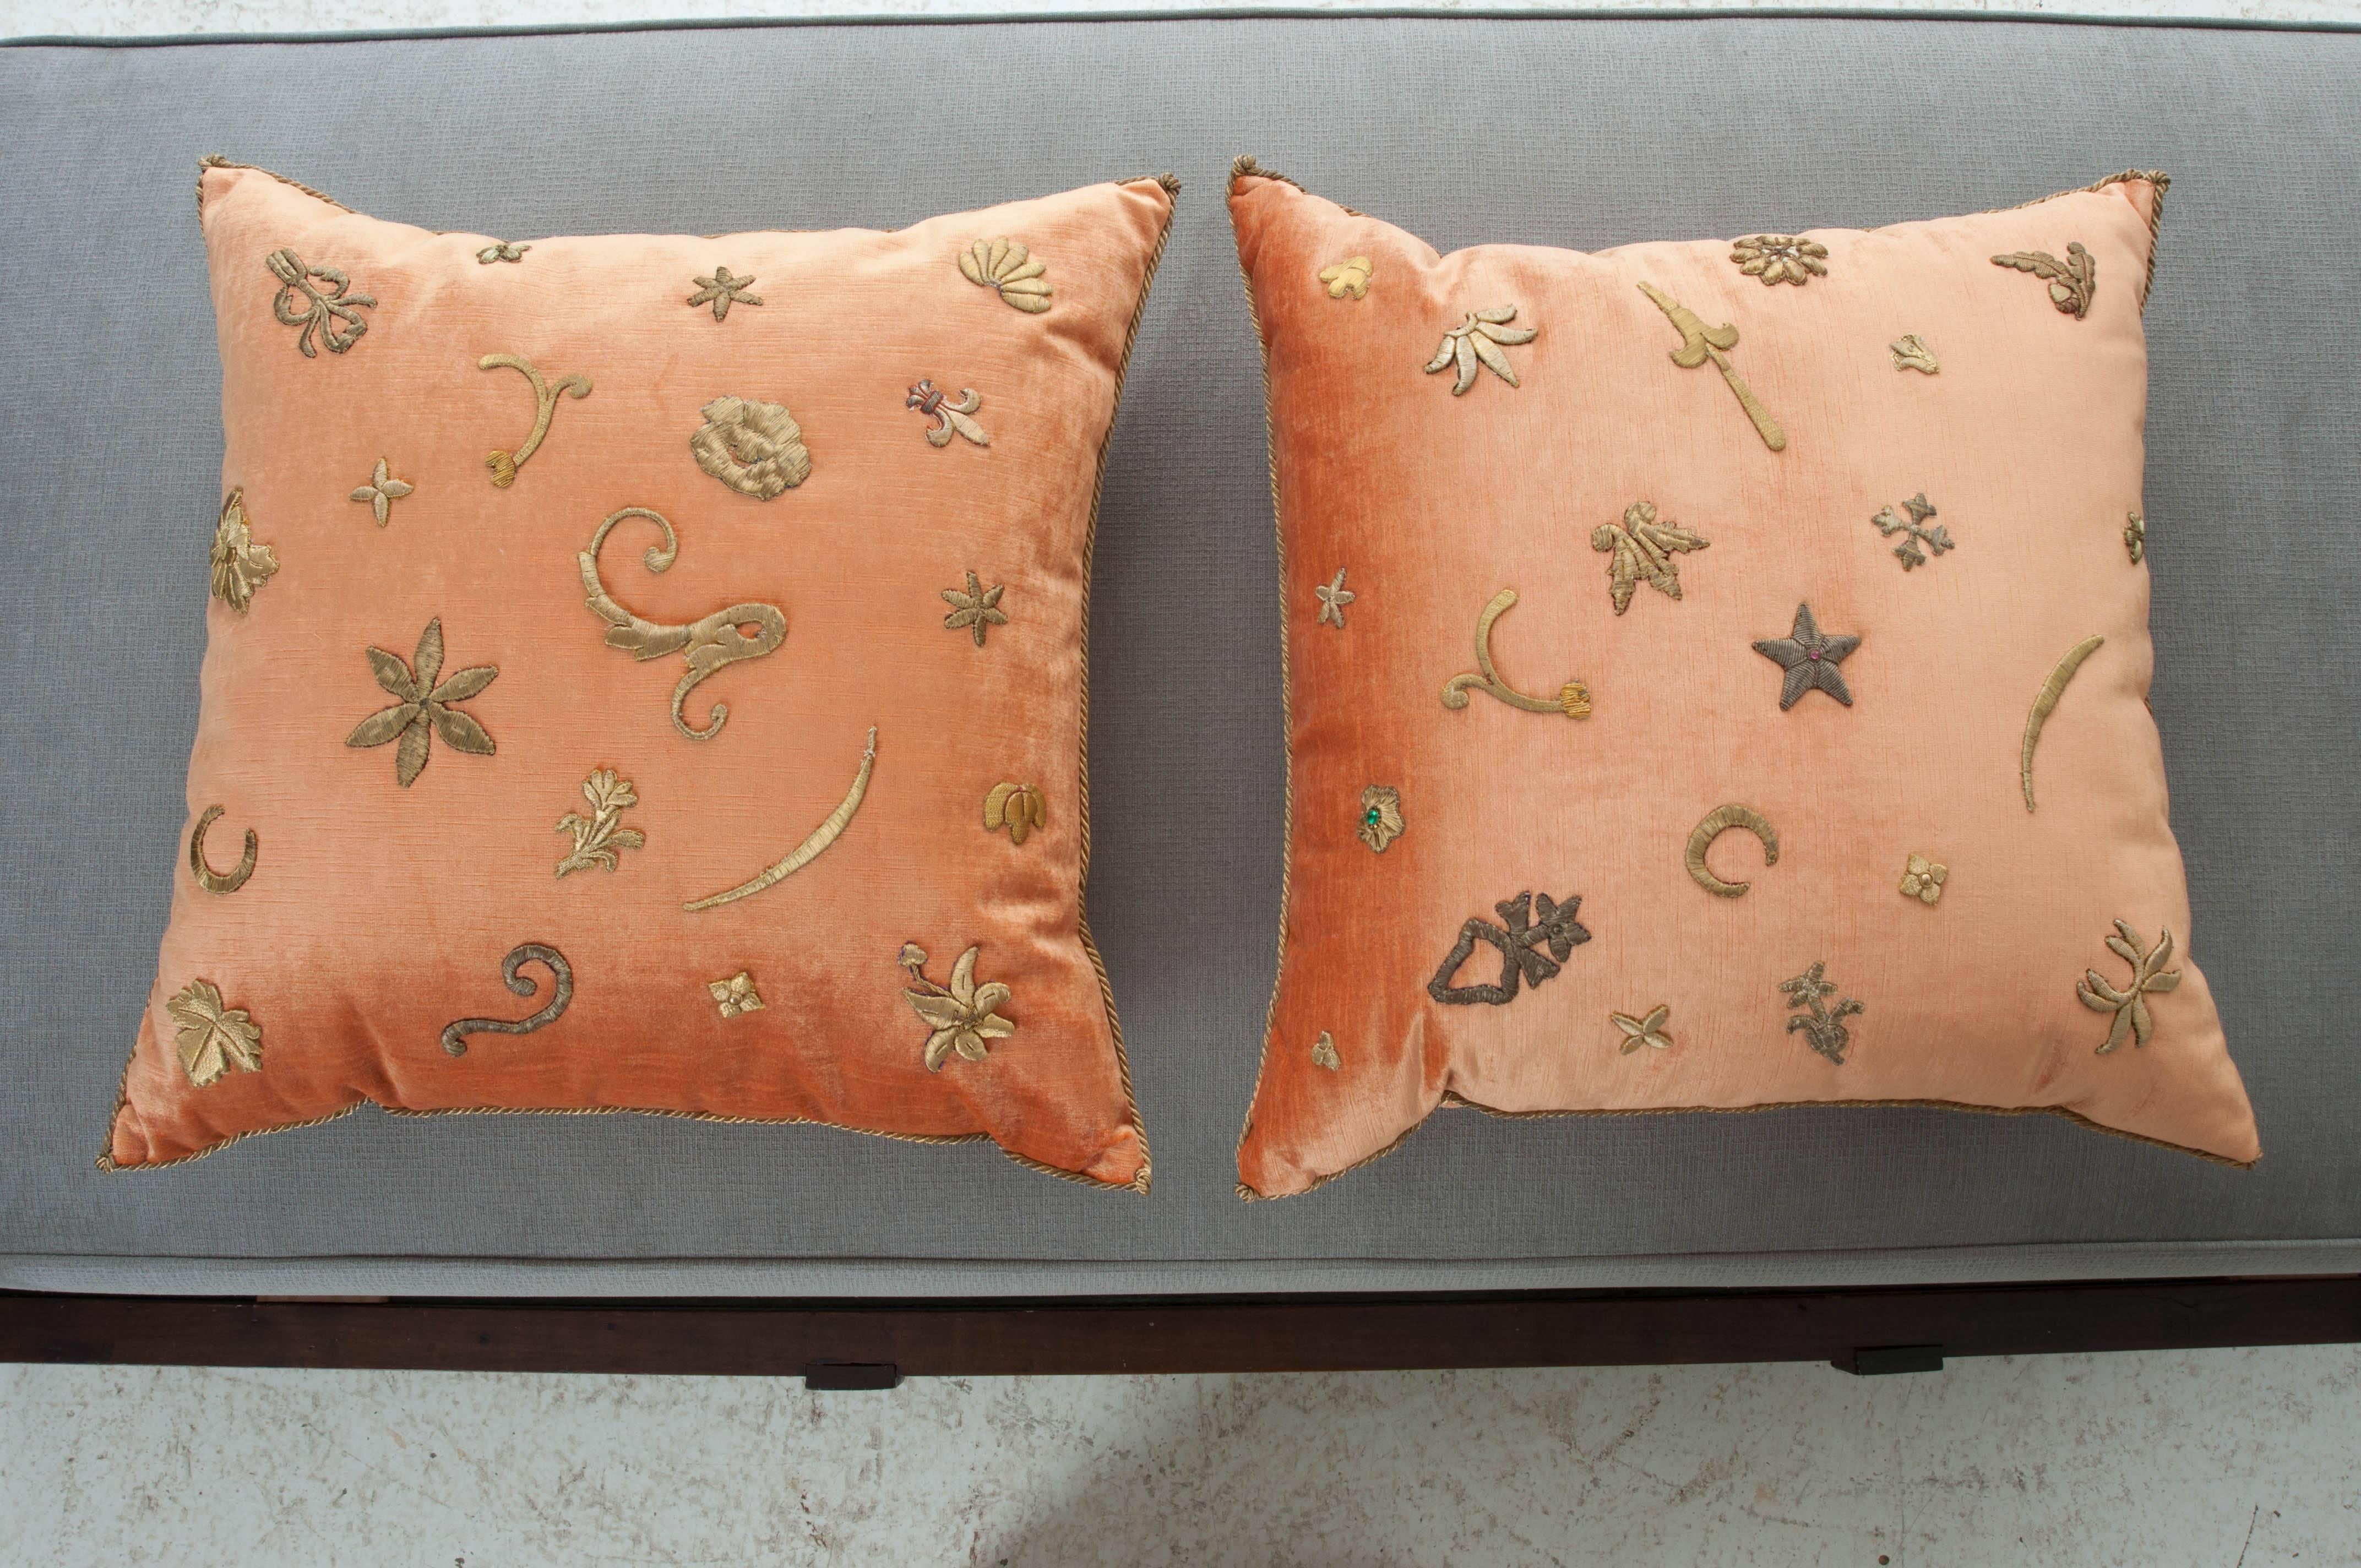 Antique Textile Pillows by B.Viz Designs 4